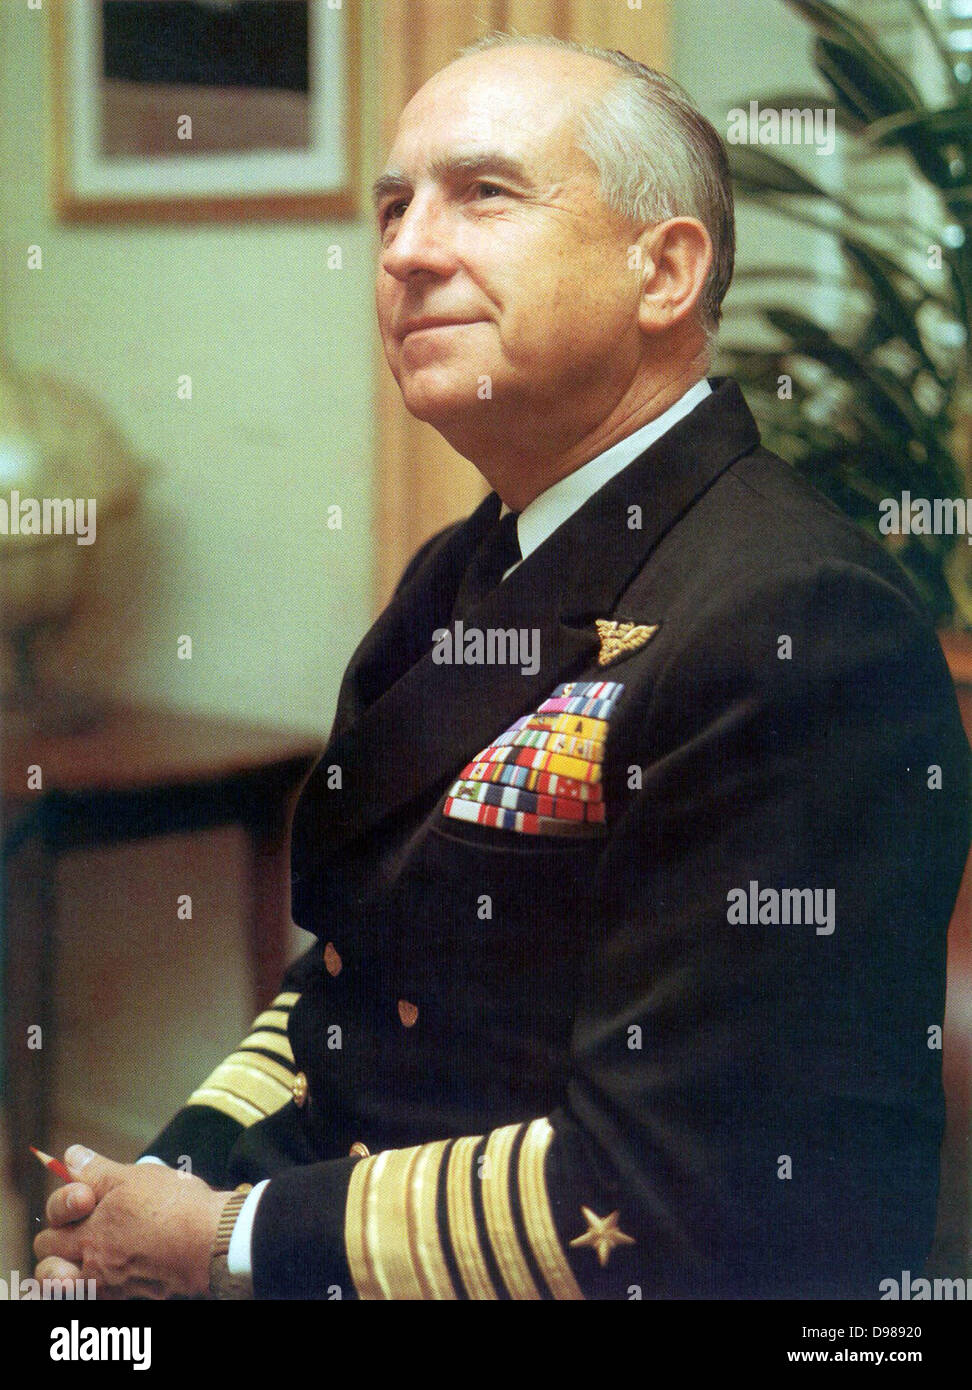 Thomas Hinman Moorer (9 febbraio 1912 - 5 febbraio 2004) era un ammiraglio statunitense che ha servito sia come Capo di operazioni navali e Presidente del Comune di capi di Stato Maggiore. Capo di operazioni navali tra il 1967 e il 1970, all'altezza del coinvolgimento degli Stati Uniti in Vietnam. Egli ha anche servito come Presidente del Comune di capi di Stato Maggiore dal 1970 fino al 1974 Foto Stock